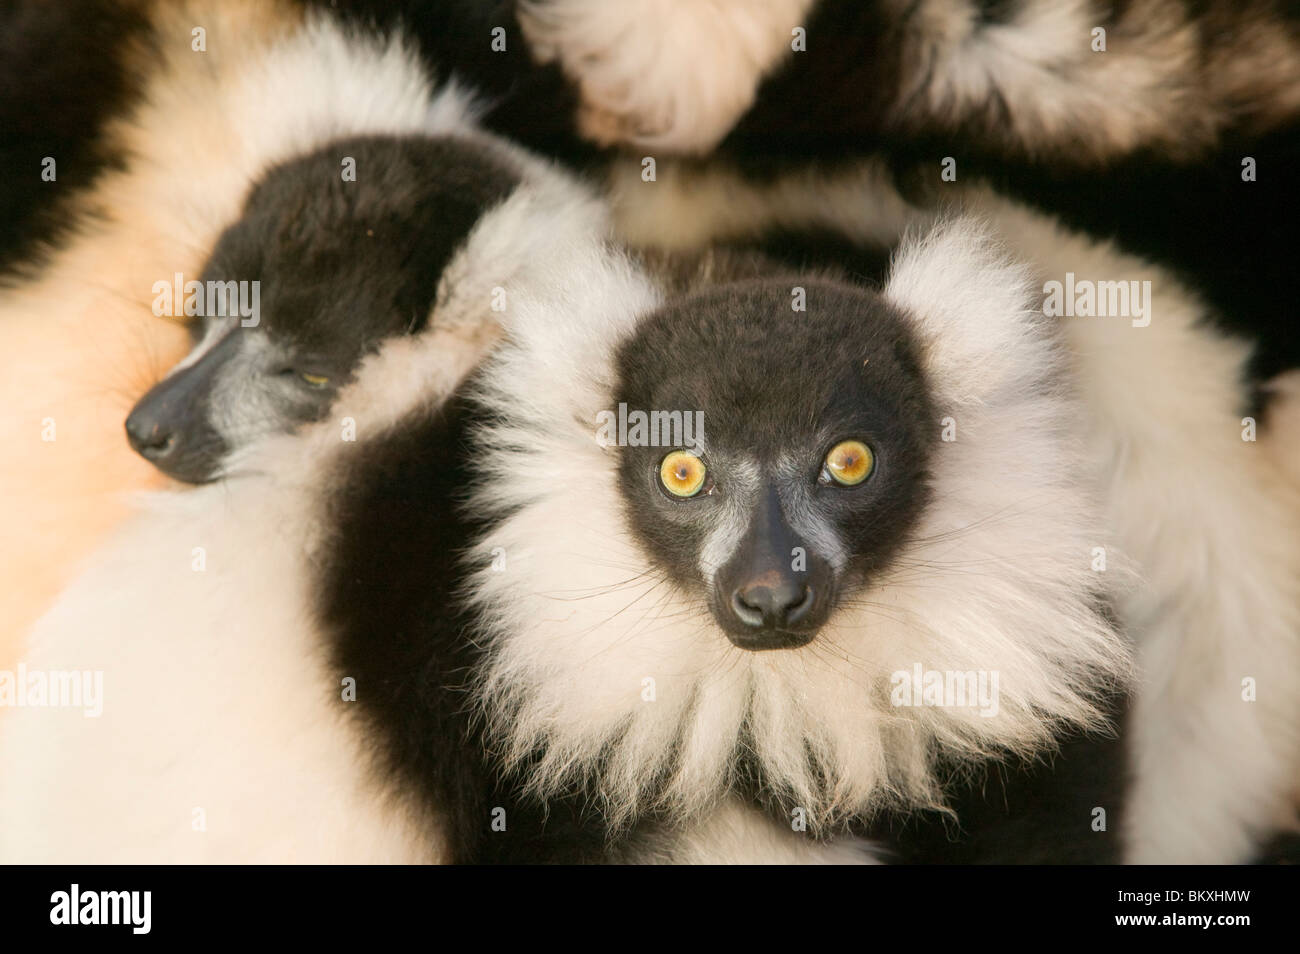 Ruffed Lemurs in a cuddle Stock Photo